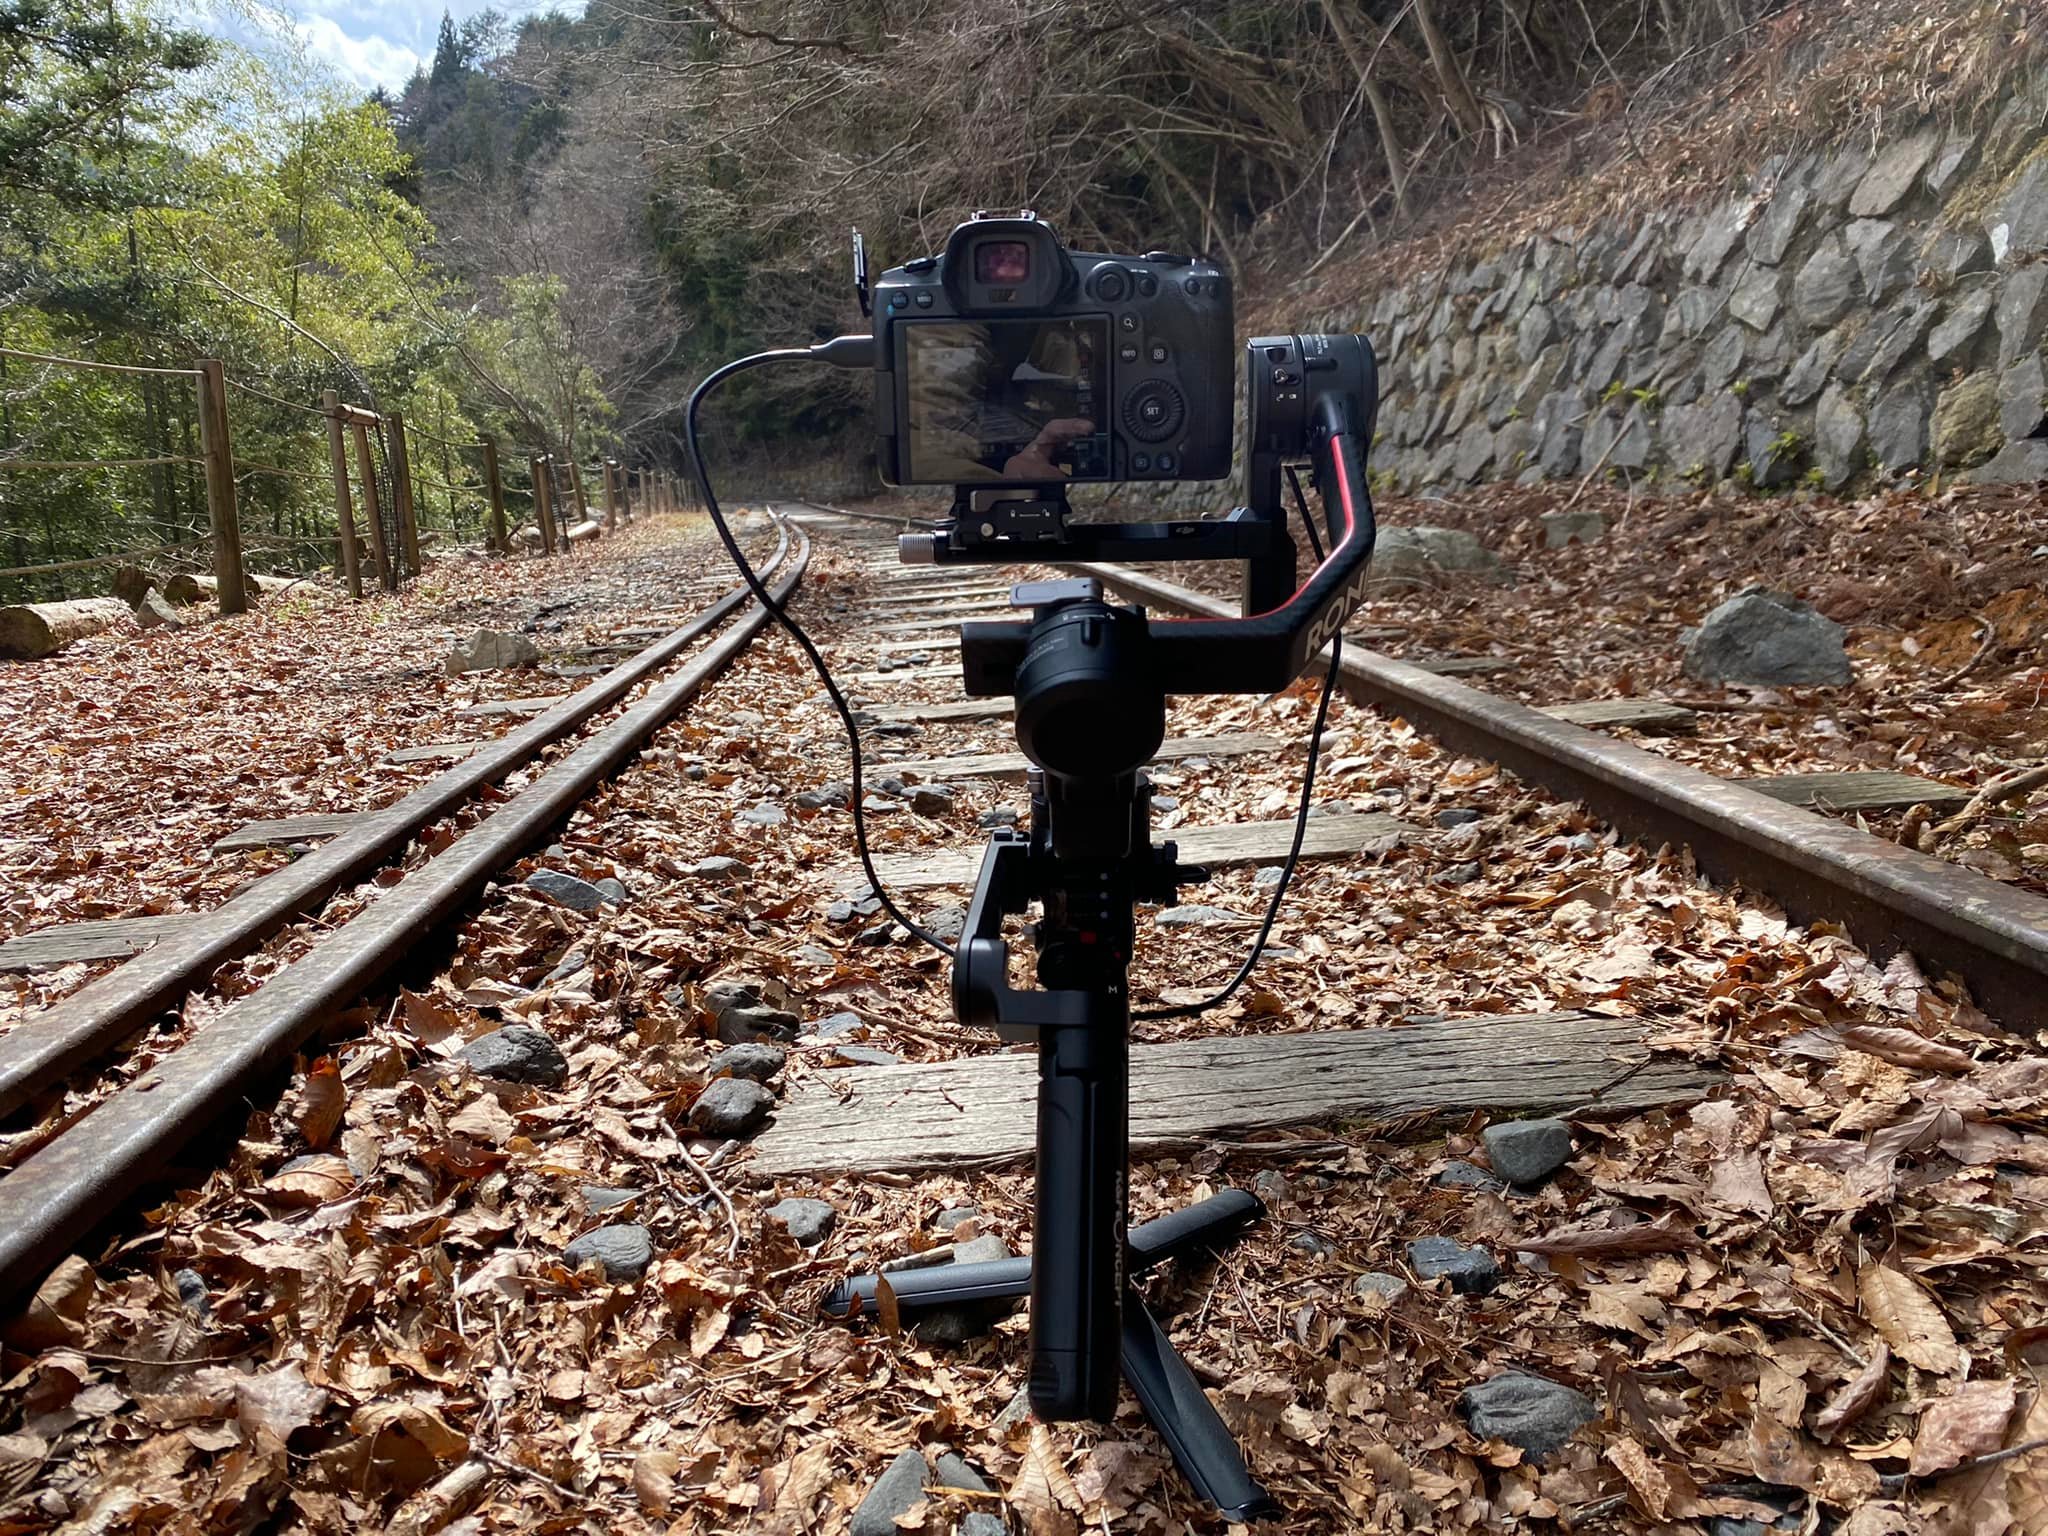 【まるでドローン】ジンバルで滑らかな映像を撮影するためにオススメのカメラ機材